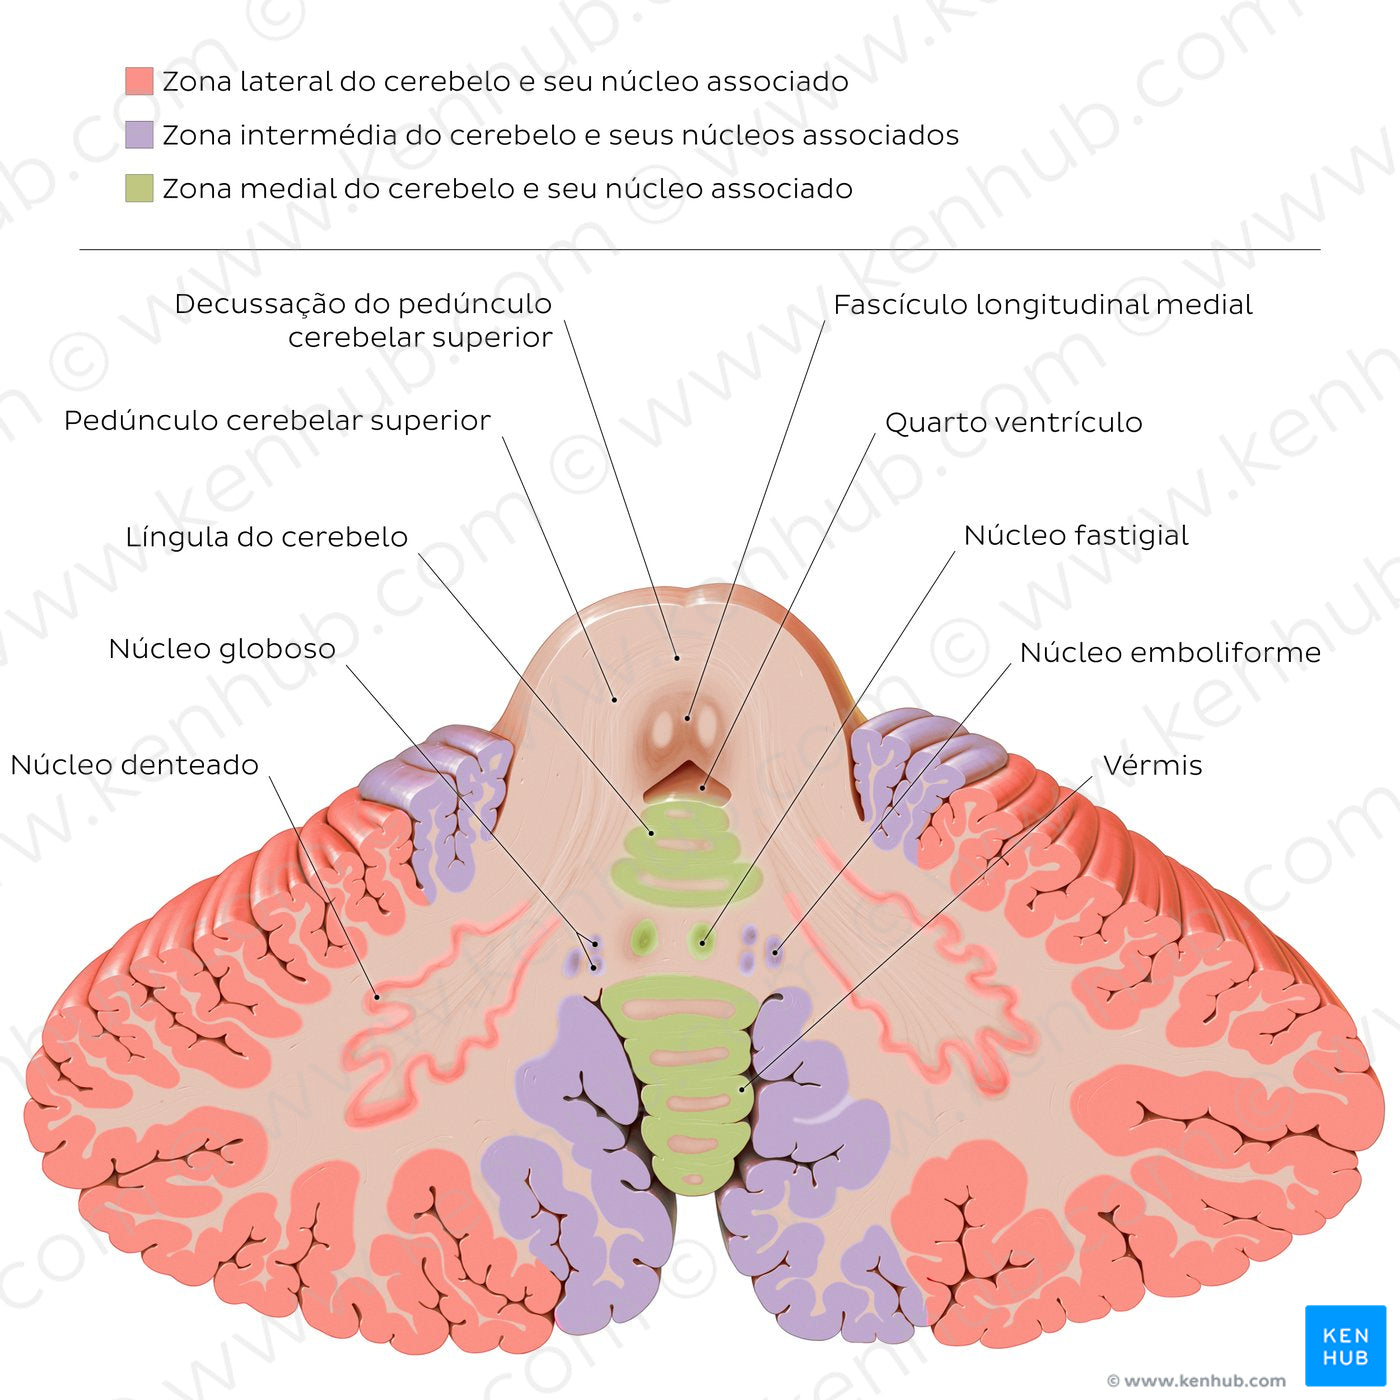 Cerebellar nuclei (Portuguese)